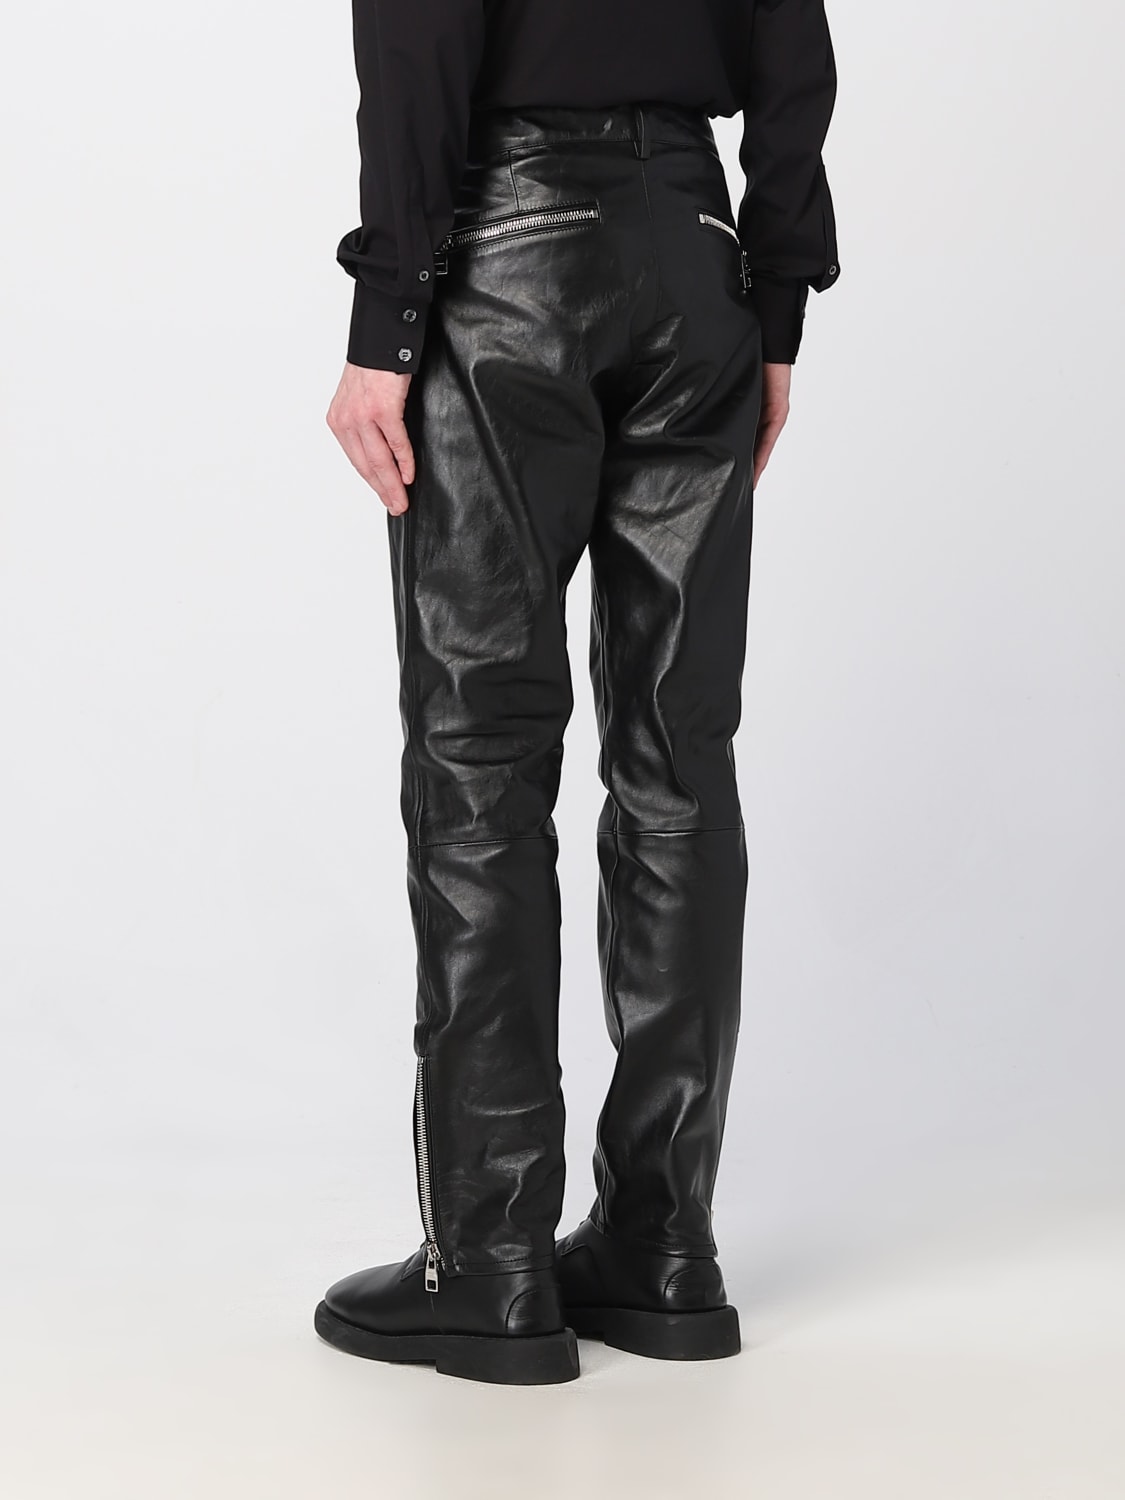 Alexander McQueen leather pants